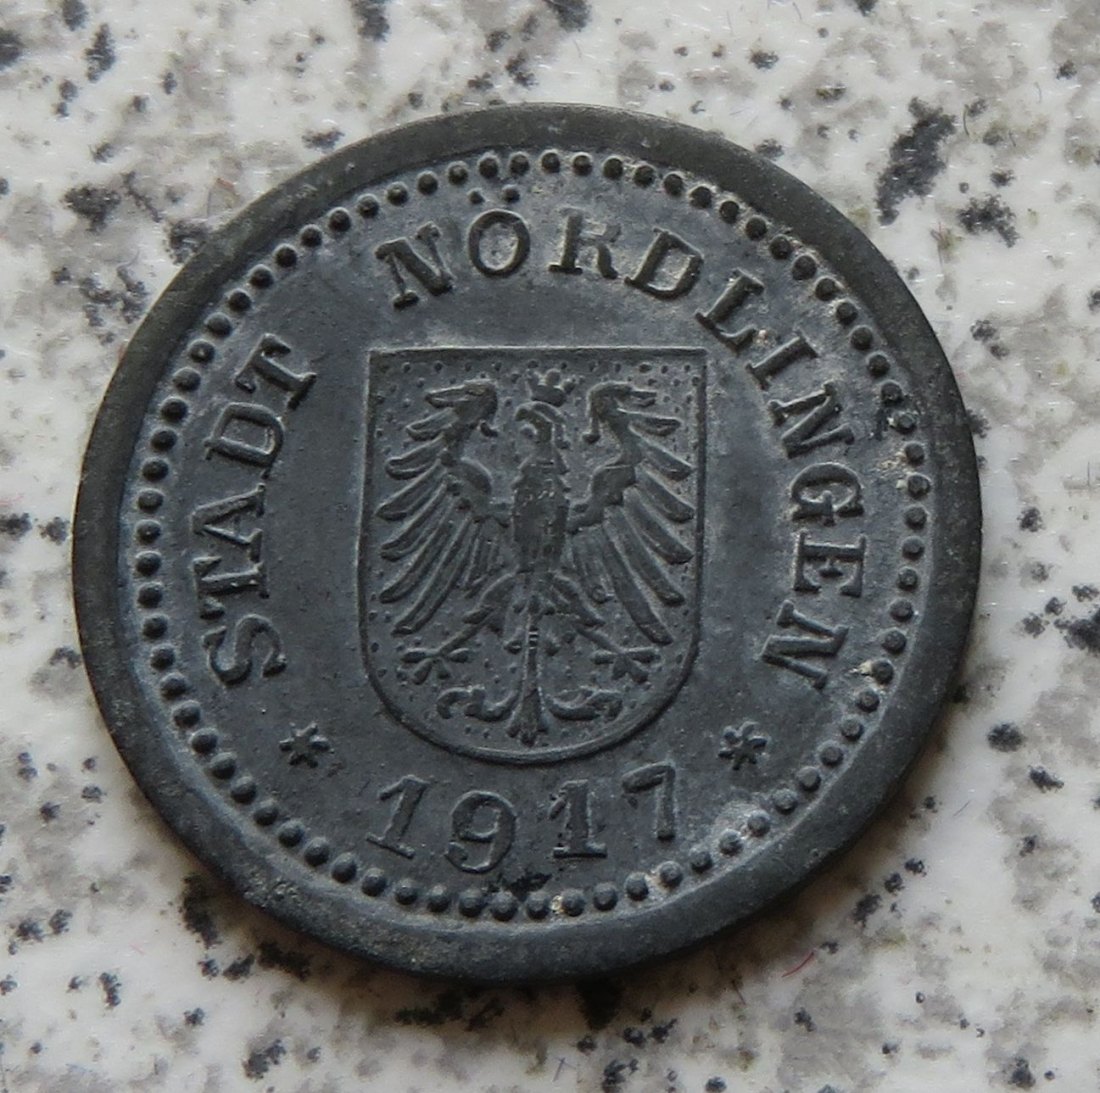  Nördlingen 5 Pfennig 1917   